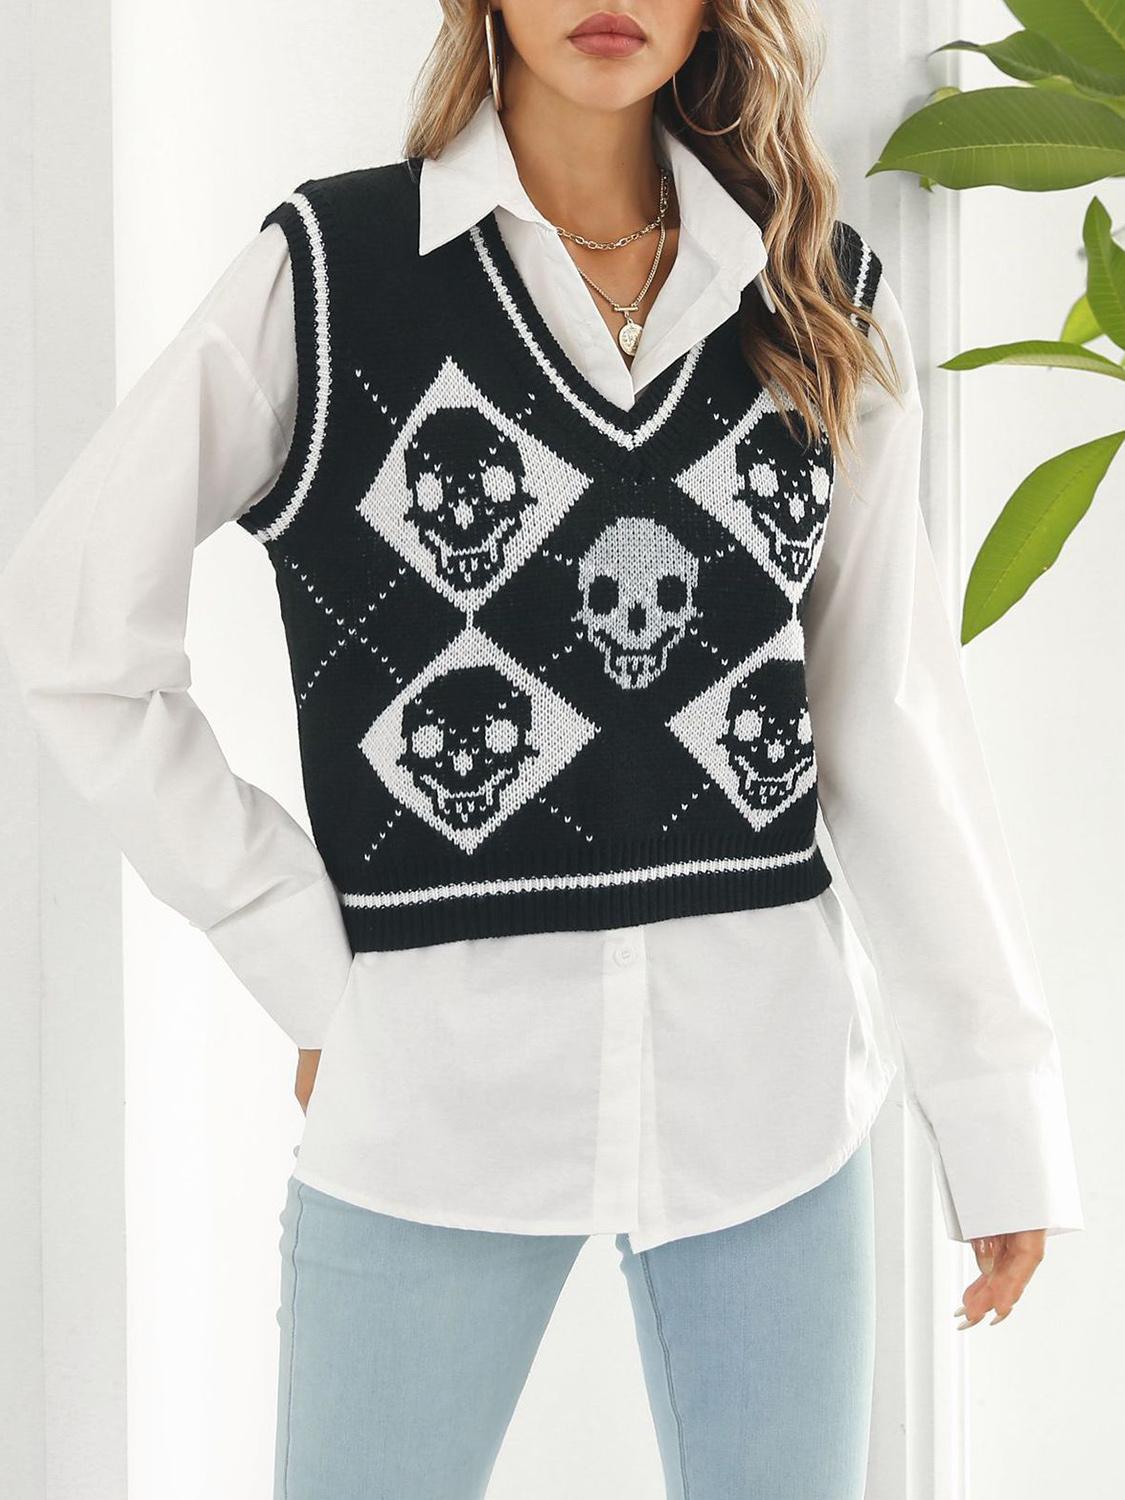 Geumxl Skull Print Fashion Casual Knit Vest